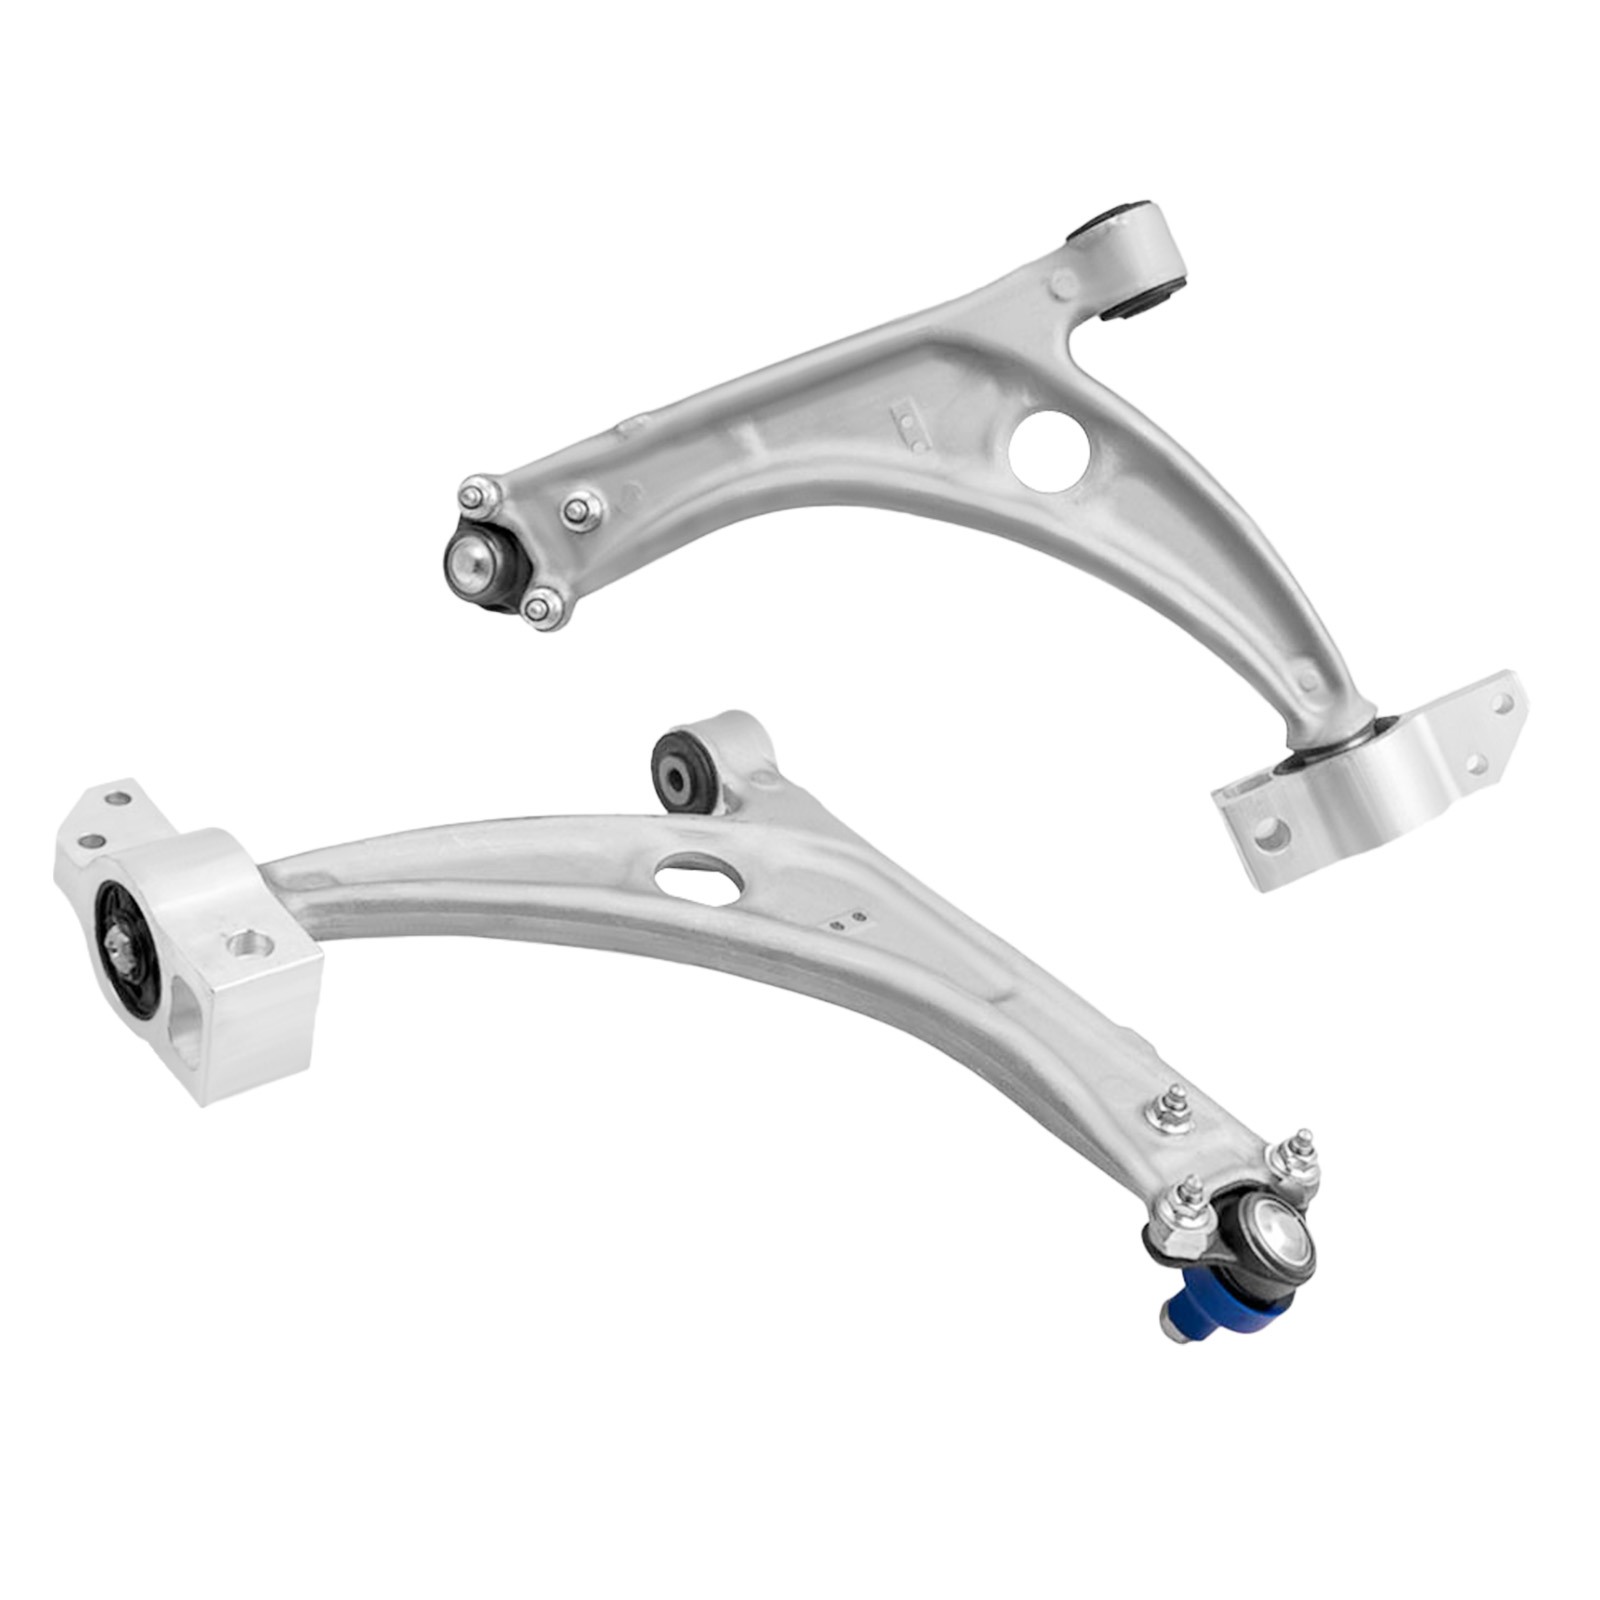 2 pcs suspension front lower control arm kit compatible for volkswagen cc 2013-2016 set